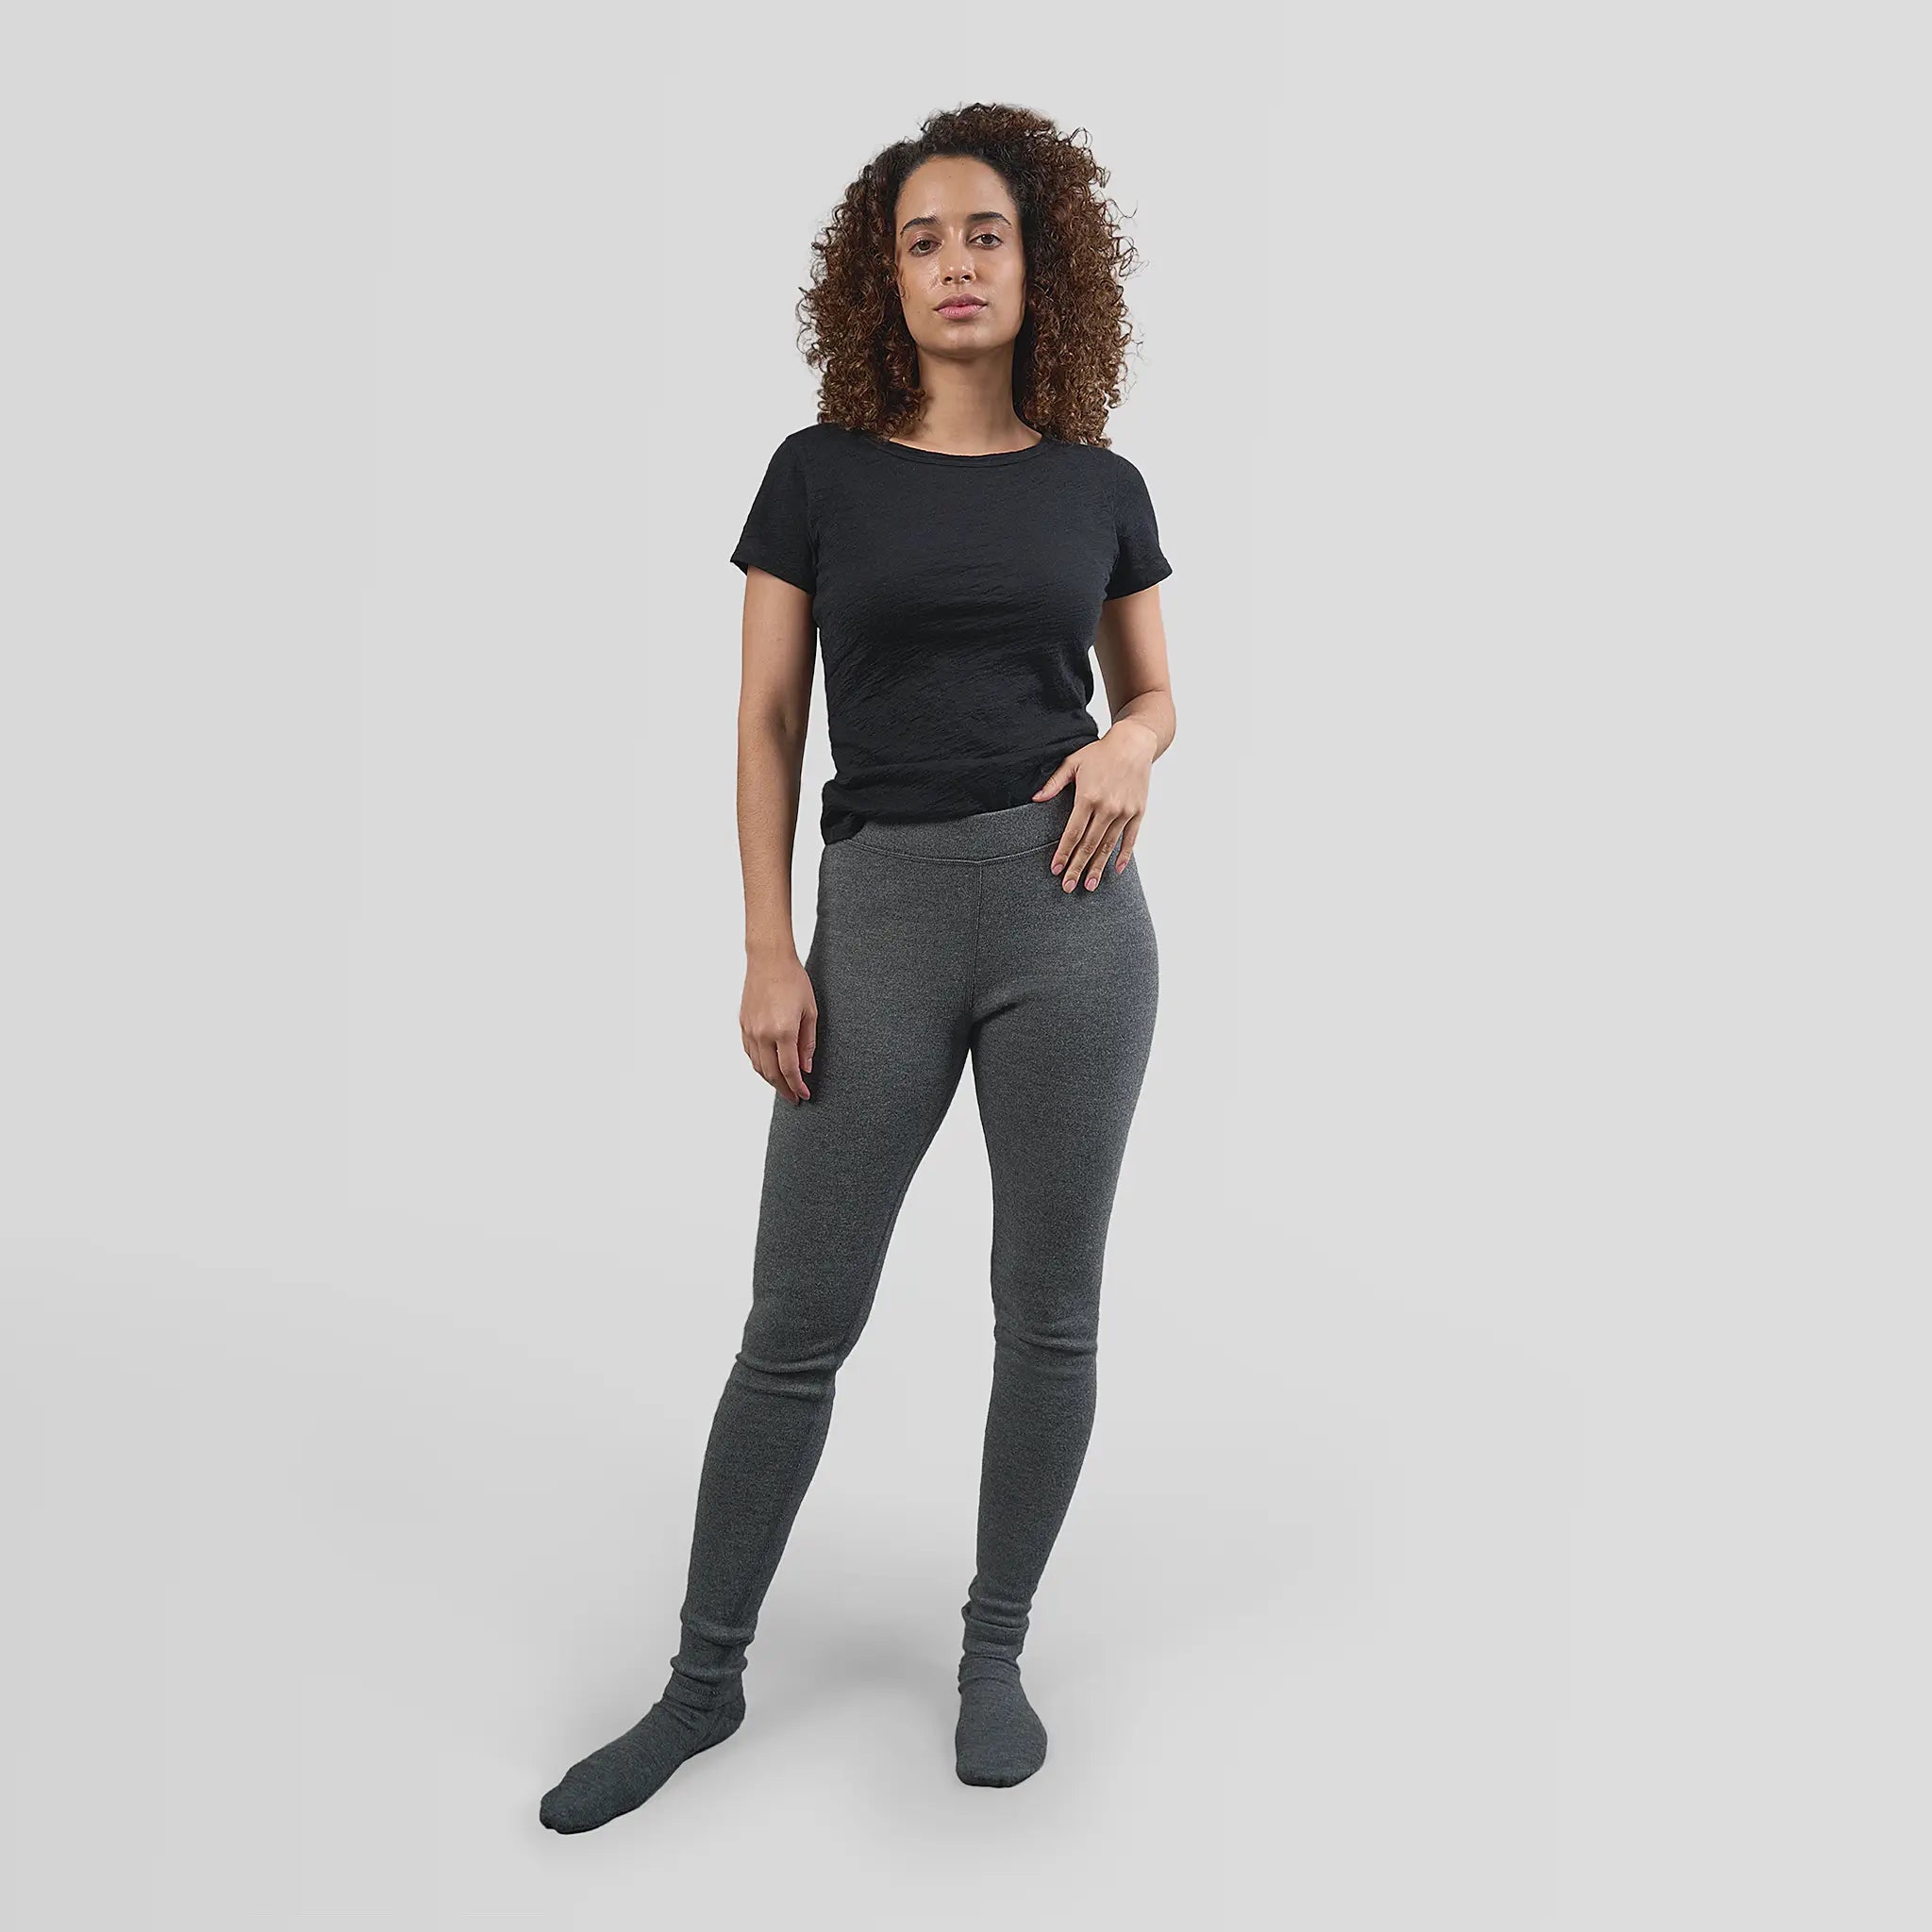 Premium Photo  A woman puts on warm gray woolen leggings, women's legs in  winter leggings